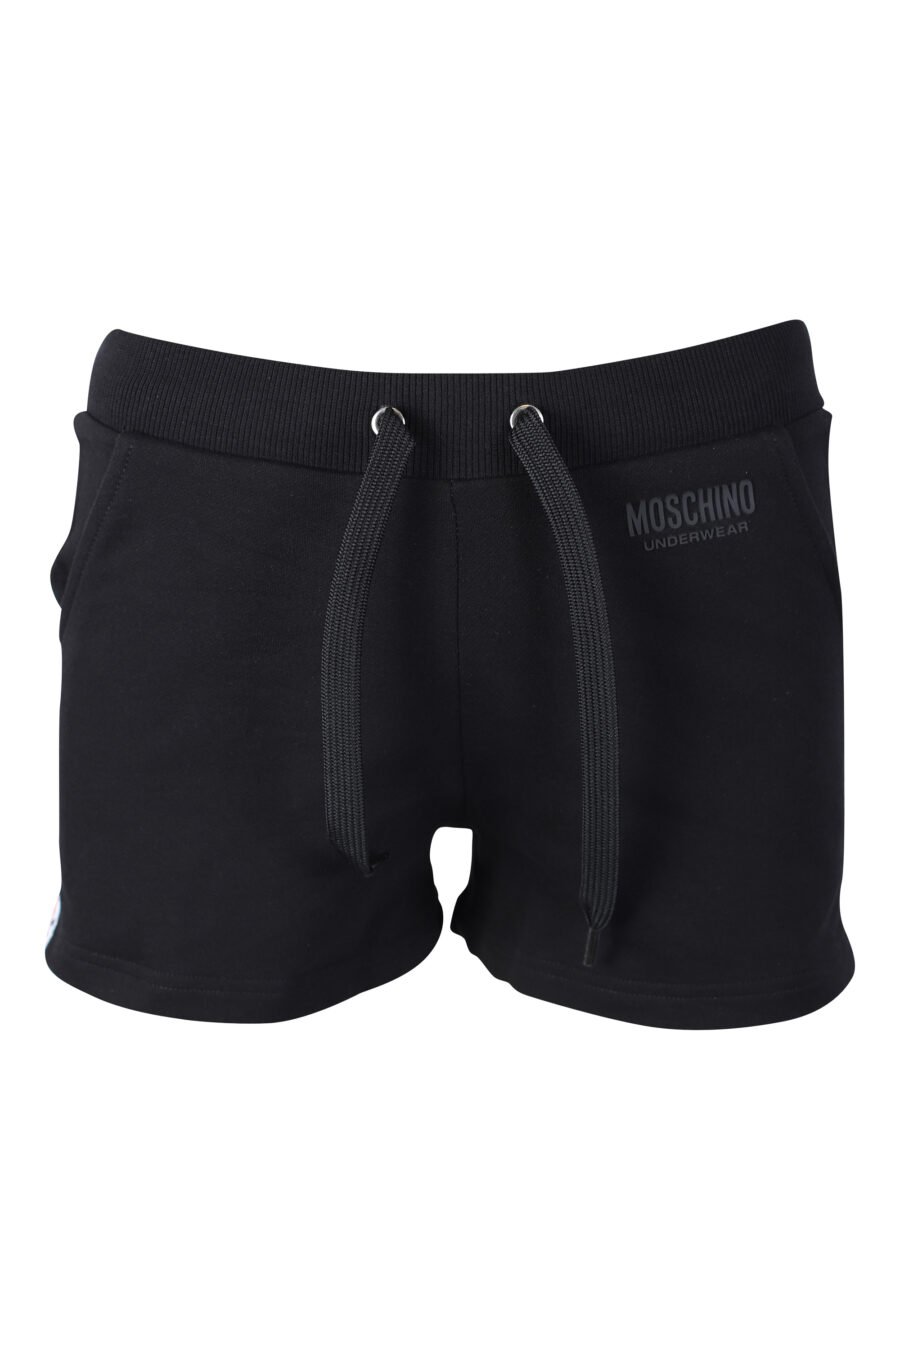 Pantalón de chándal negro corto con logo en cinta lateral - IMG 2292